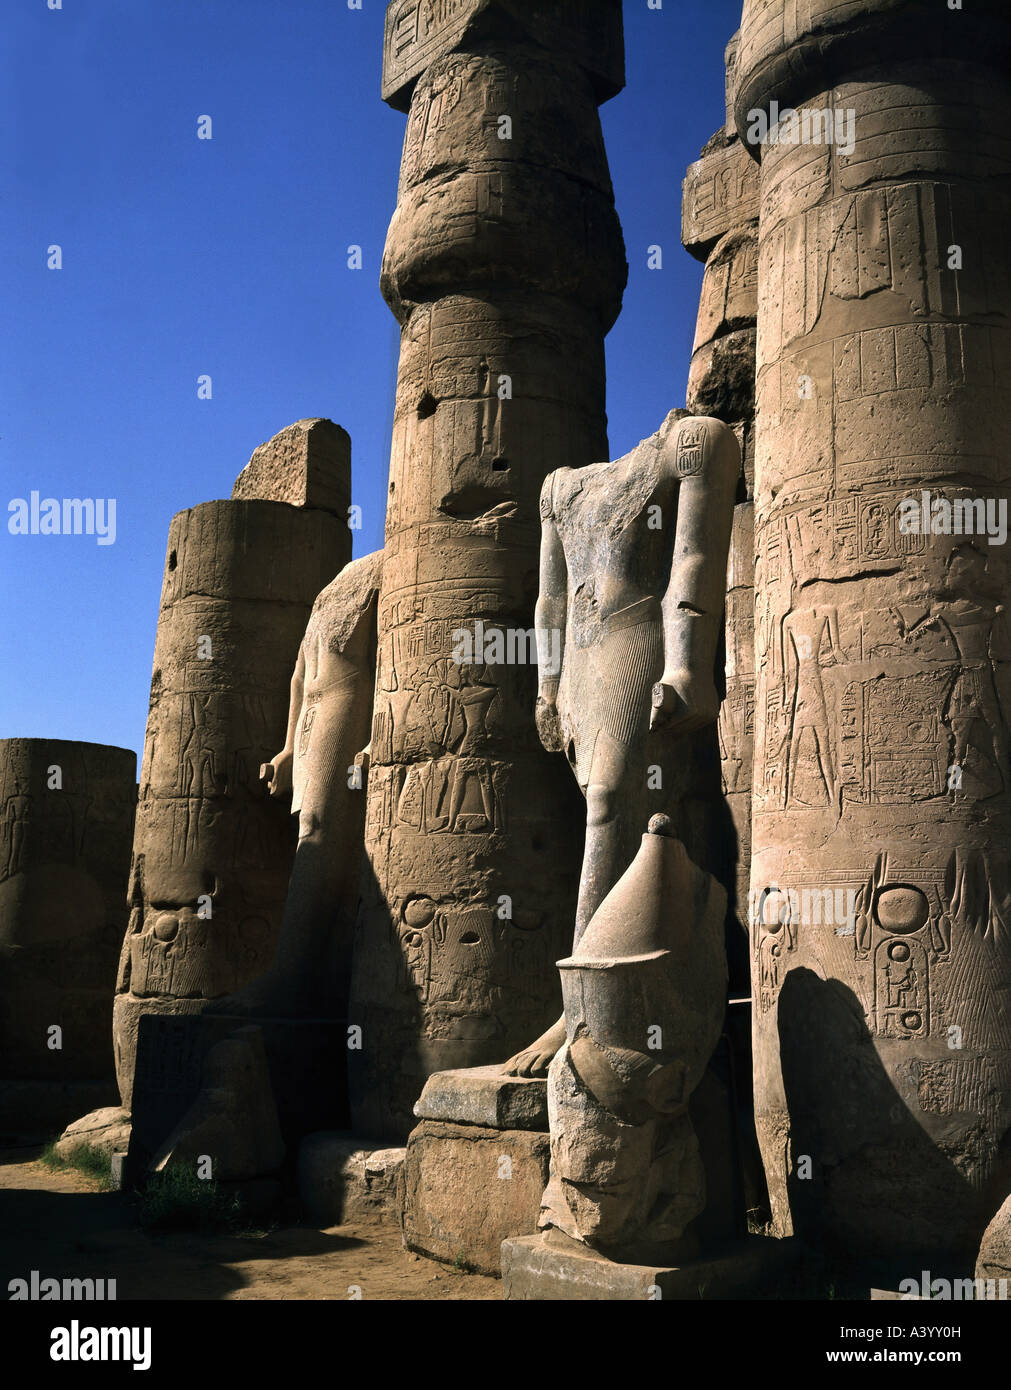 Viajes / geografía, Egipto, Luxor, edificios, templo, la familia divina de Theban Amun, Mut, Chons, vista exterior, templo de Ramesses II, parte sur, estatuas del faraón Amenhotep III, arquitecto Amenhotep hijo de Hapag, 1402 - 1364 a.C., extensiones bajo Ramesses II, 1303 - 1236 a.C., histórico, África, arquitectura, templos, mundo antiguo, Nuevo Reino, XVIII / XIX dinastía, siglo XV - XIII a.C., columna, columnas, estatua, escultura, esculturas, mundo antiguo, Foto de stock